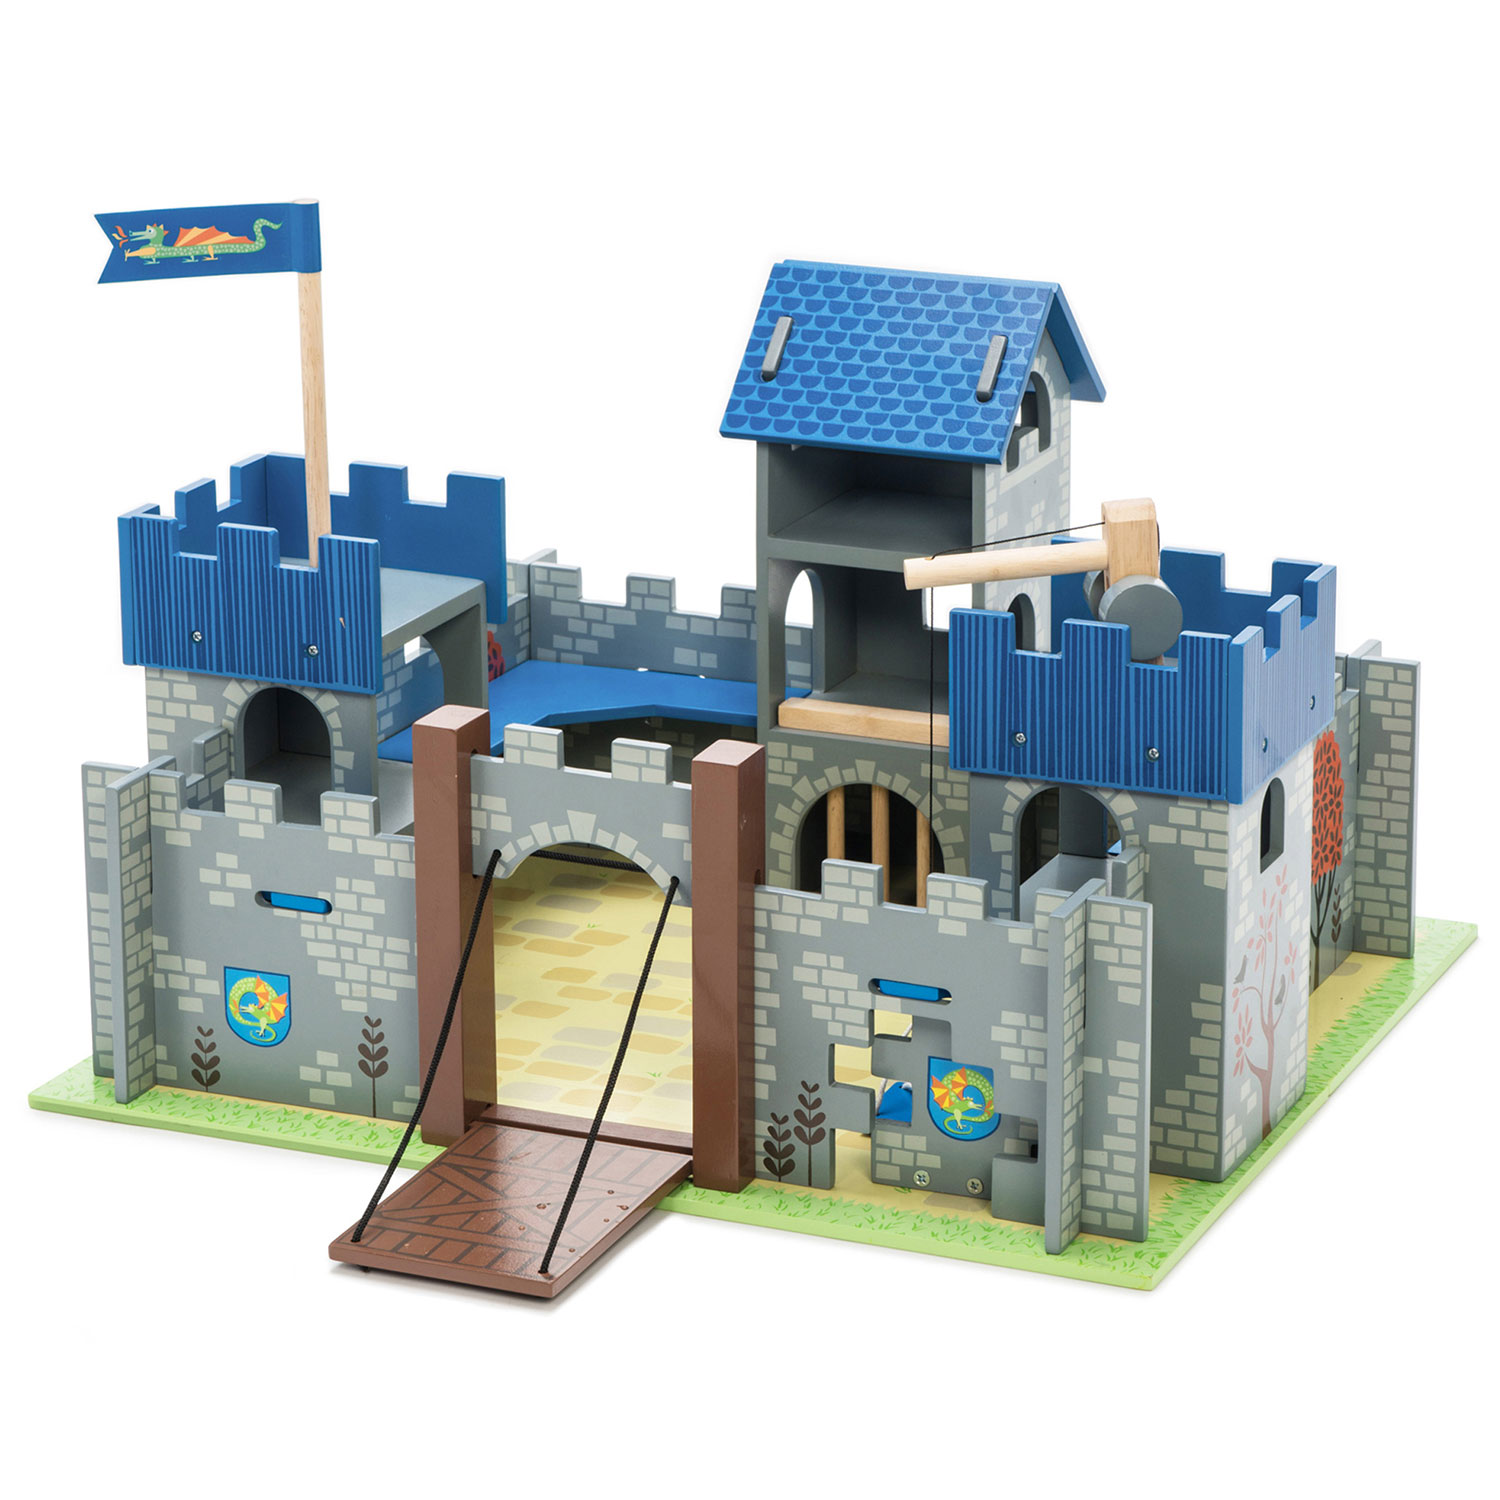 Excalibur Burg / Excalibur Castle